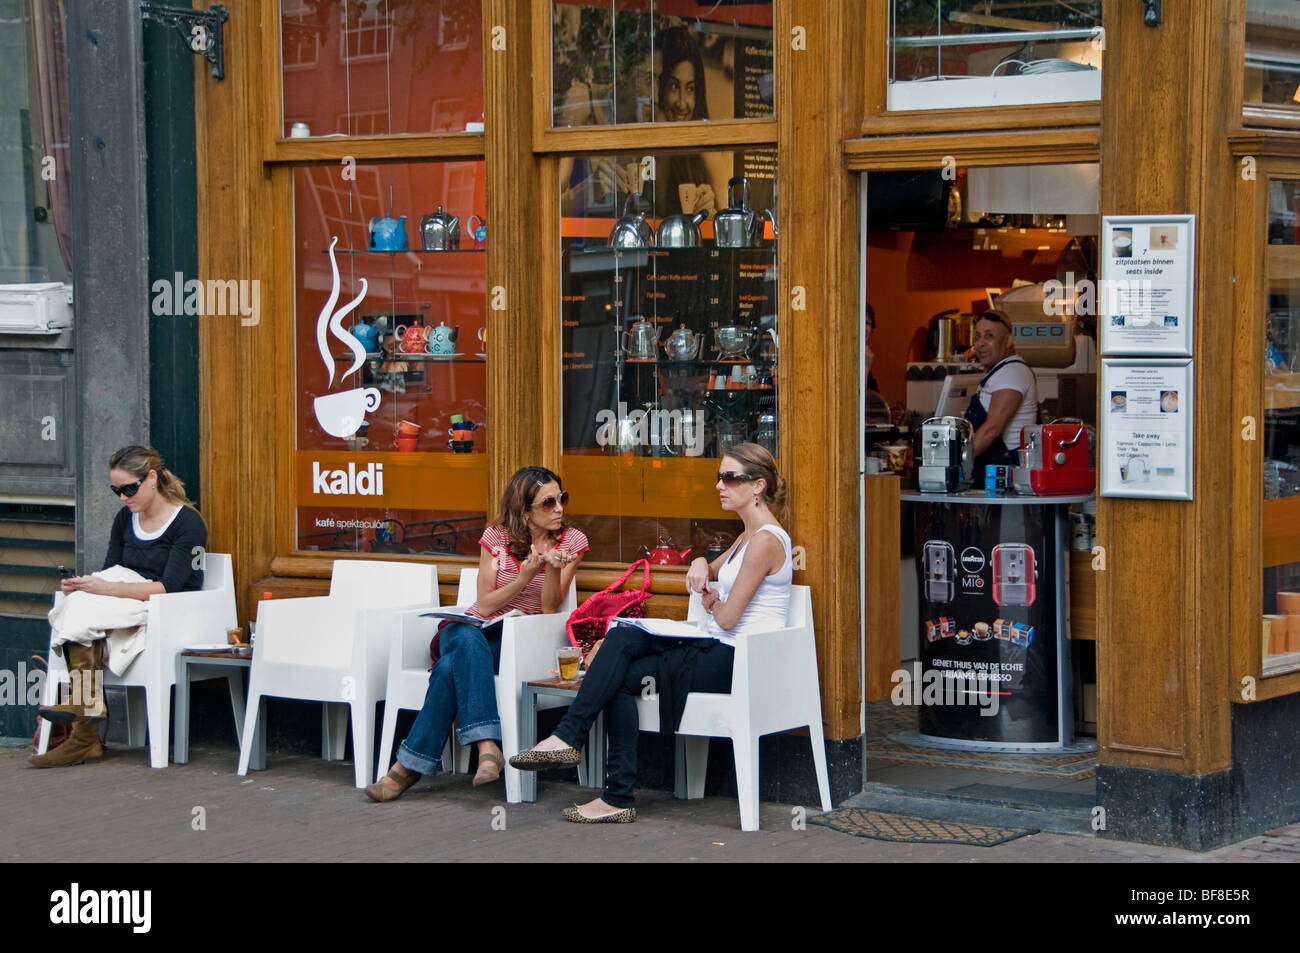 Spelling Fascineren honderd Jordaan Amsterdam Netherlands bar pub coffee women Stock Photo - Alamy